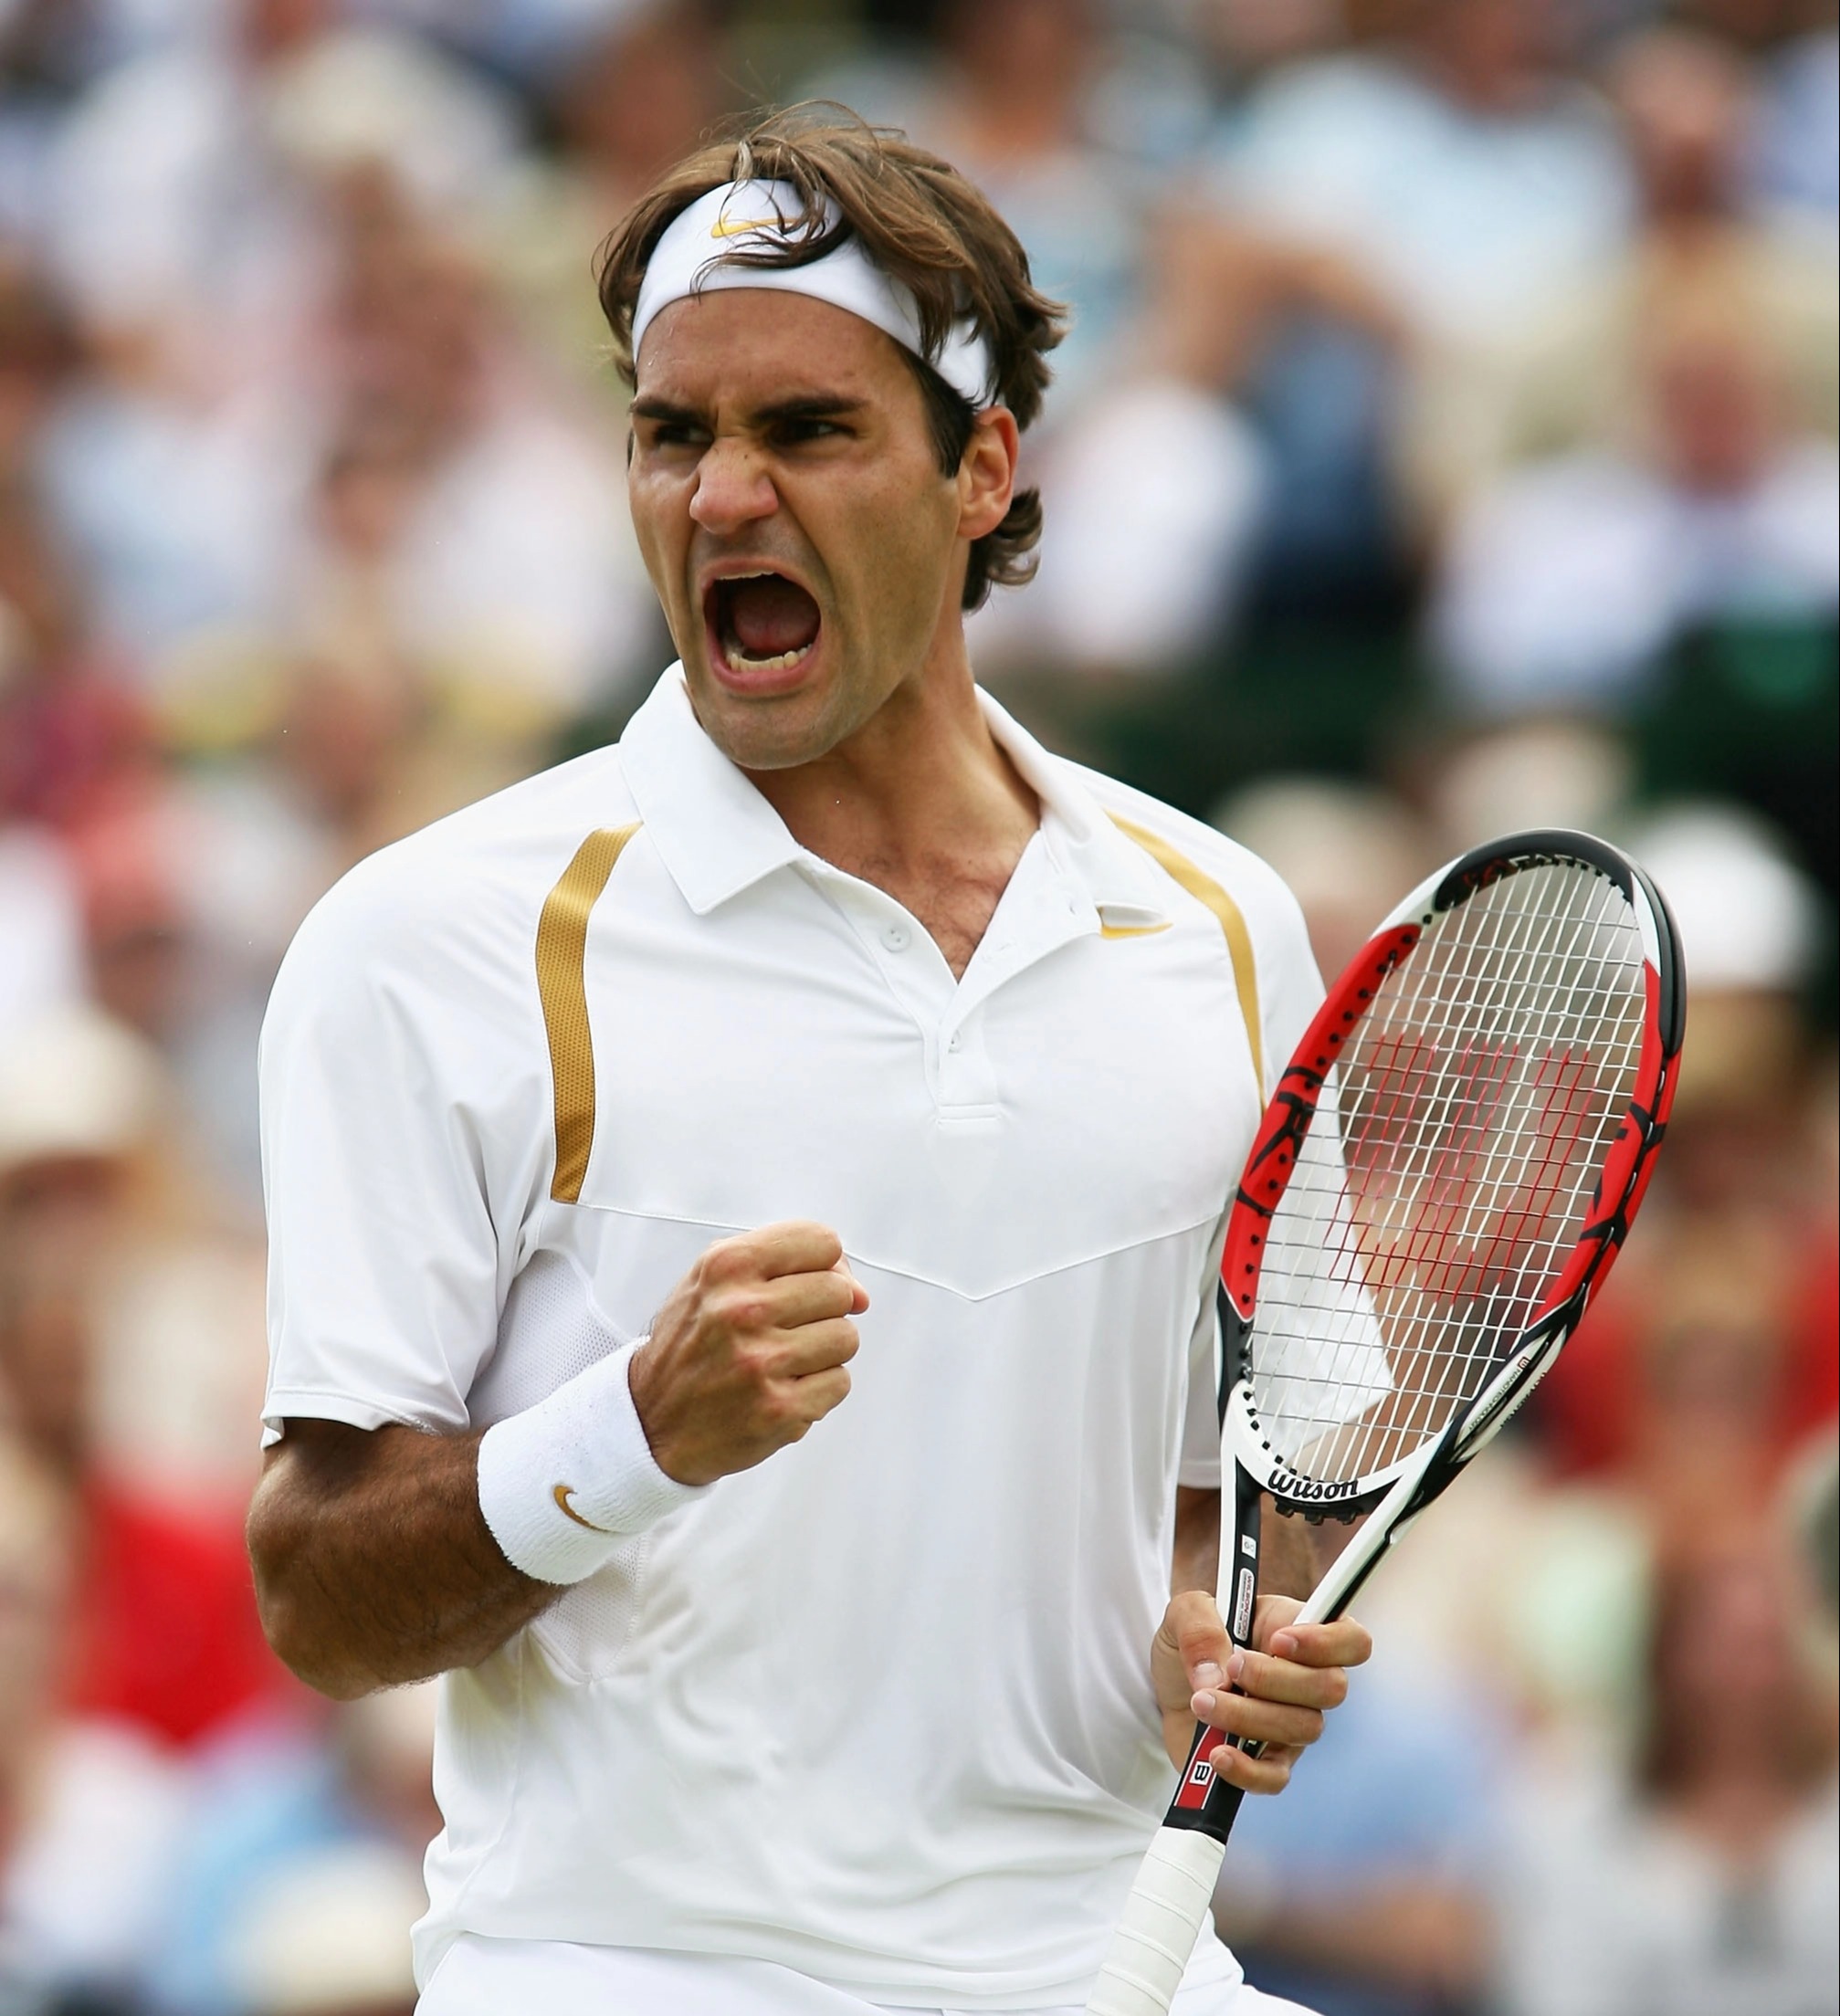 Roger Federer hat 20 Grand Slams gewonnen, wird aber nach seinem Rückzug aus dem Sport nie wieder einen gewinnen